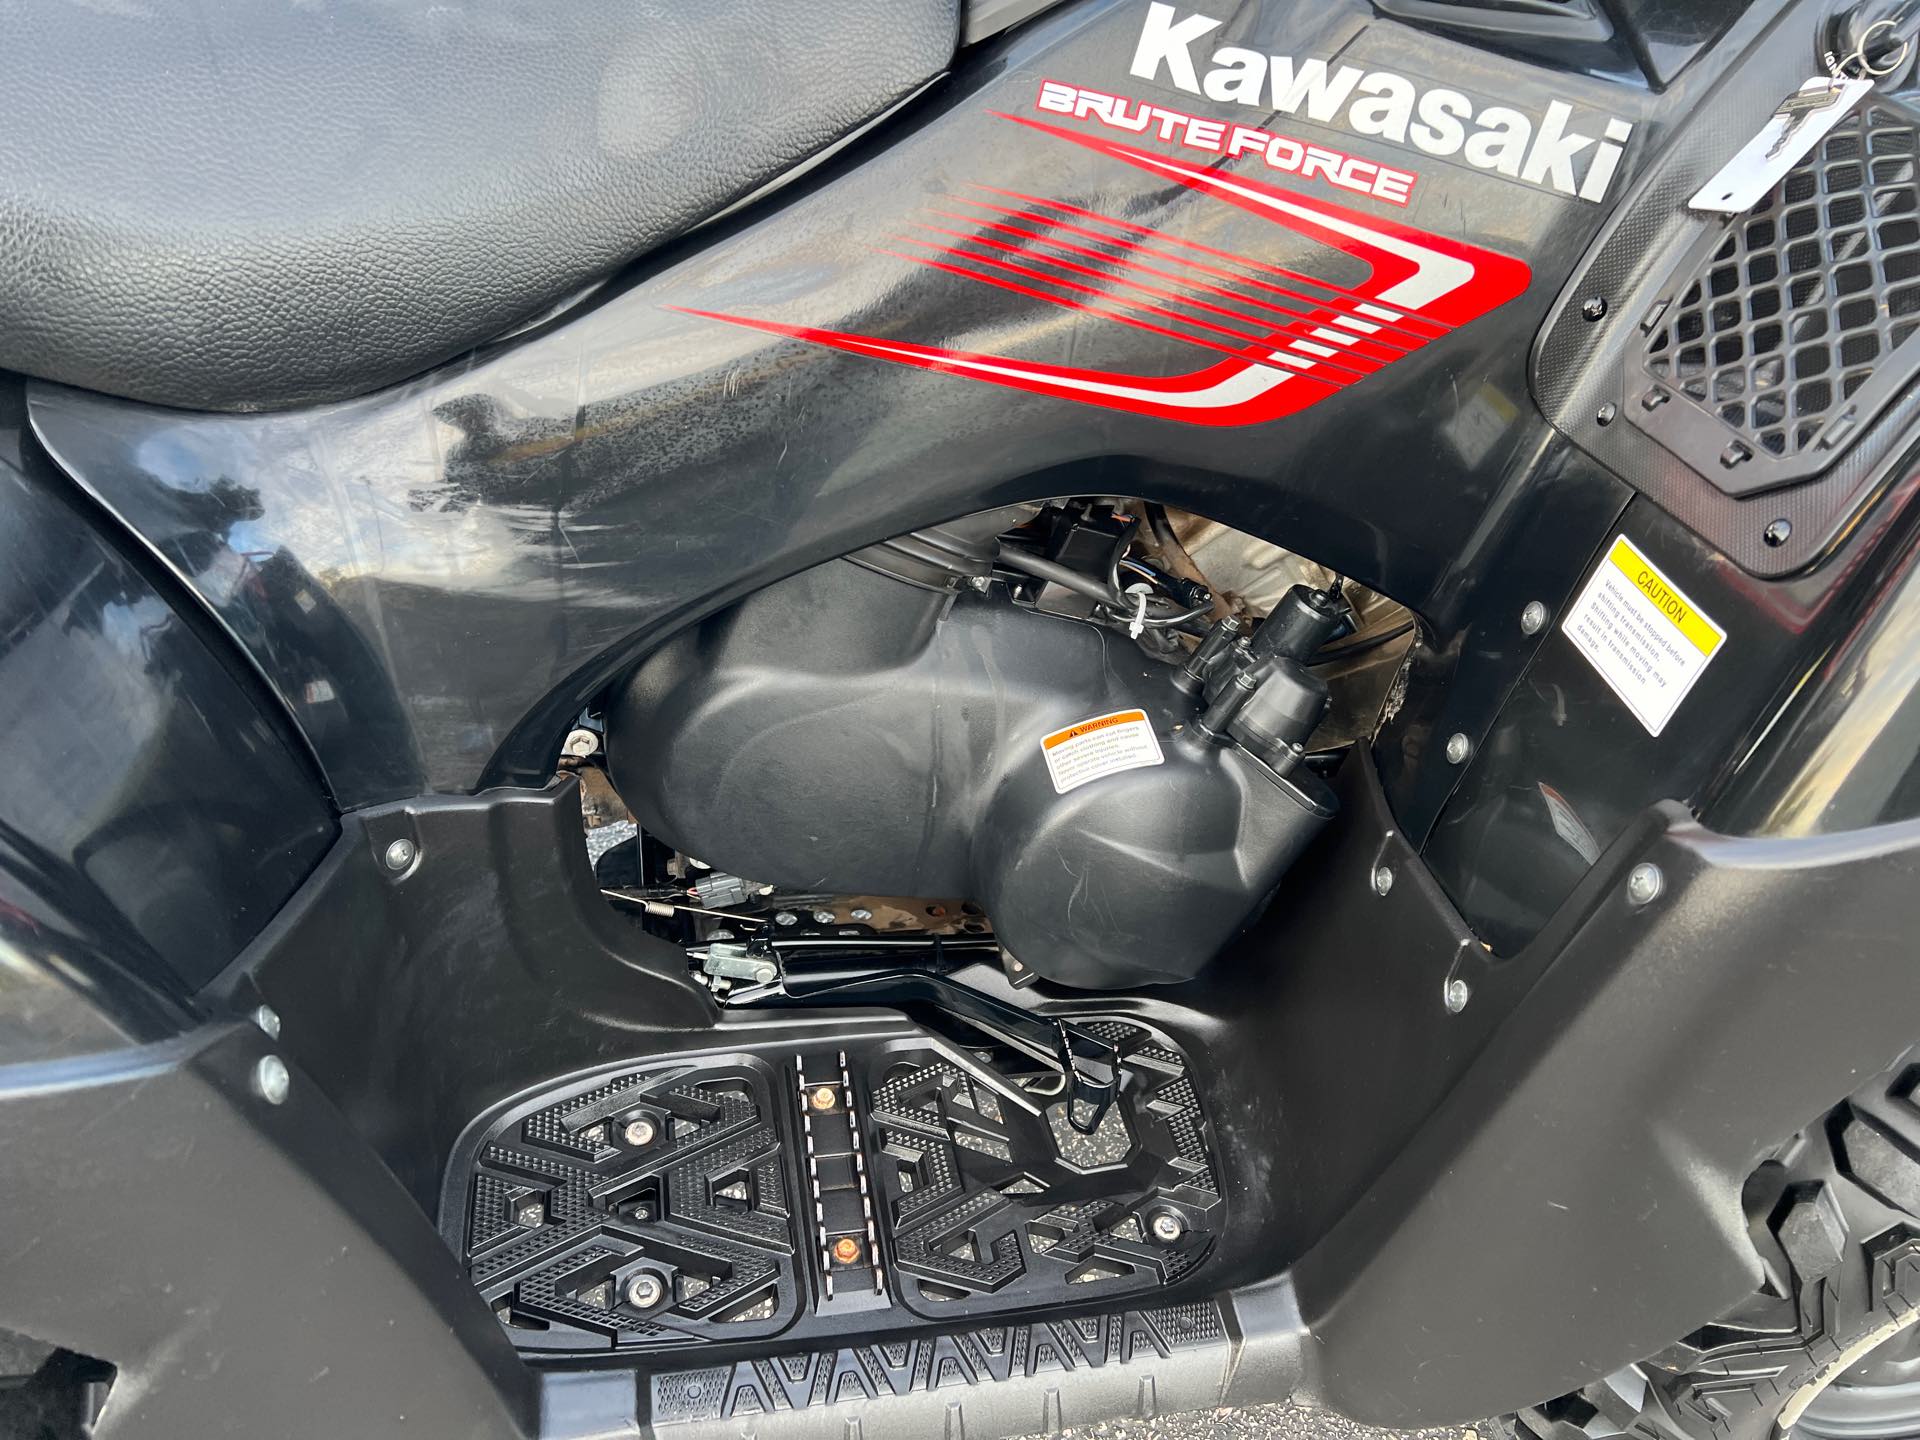 2008 Kawasaki Brute Force 650 4x4i at Mount Rushmore Motorsports